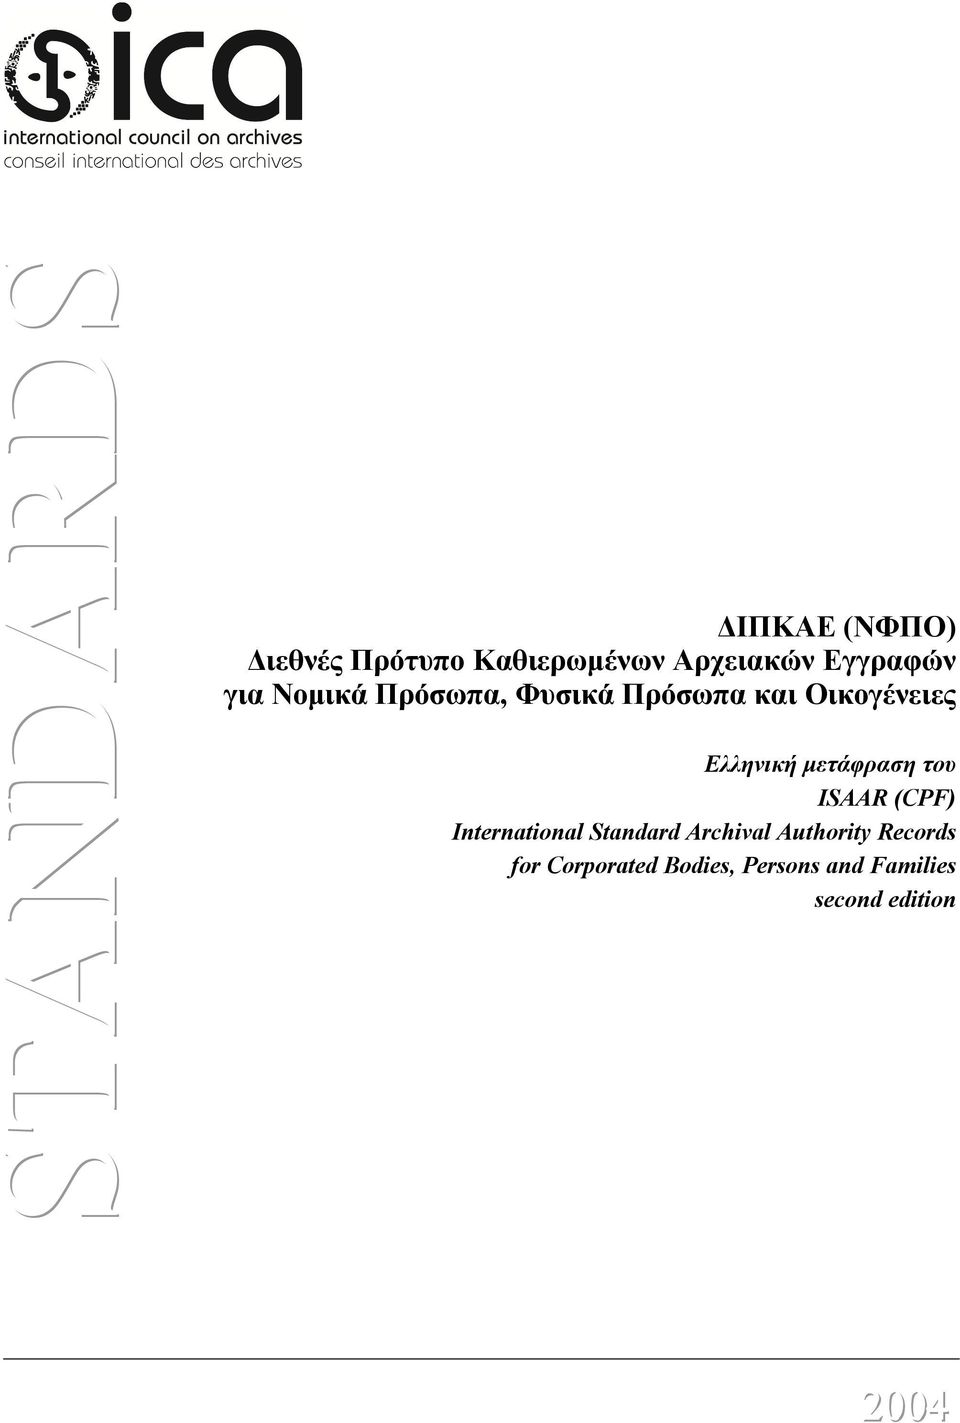 Ελληνική μετάφραση του ISAAR (CPF) International Standard Archival